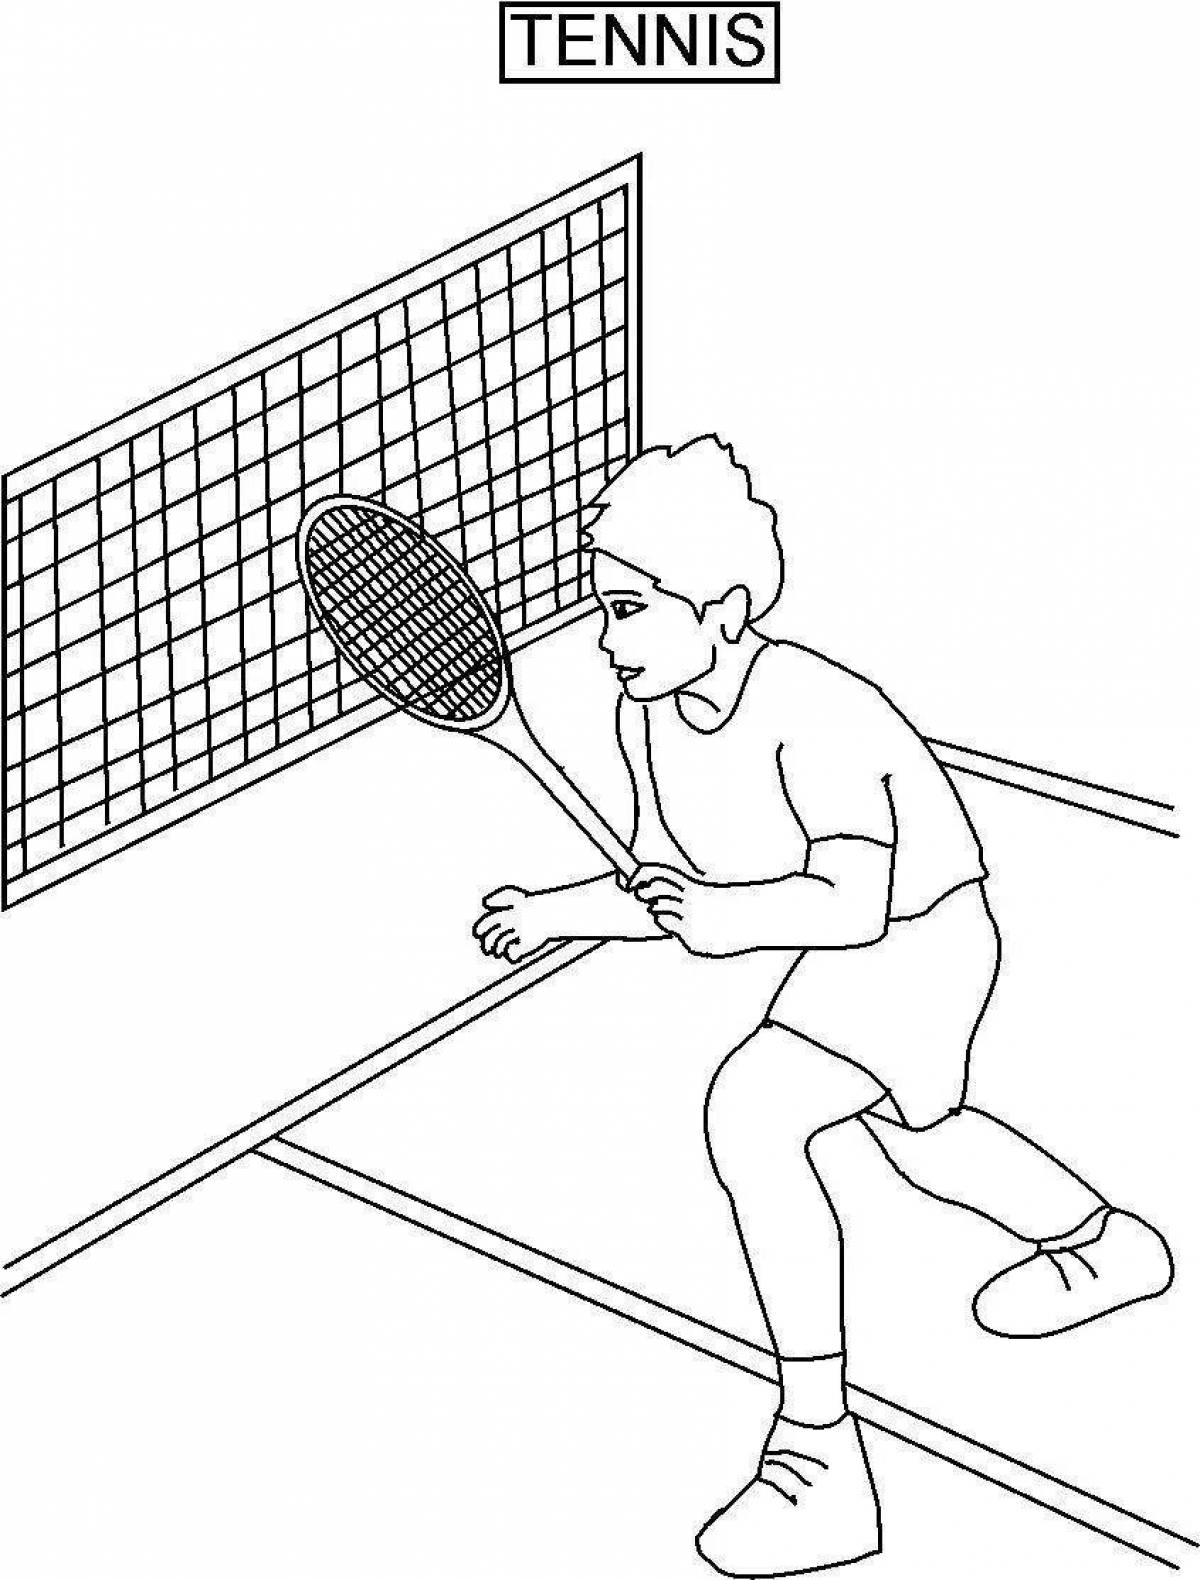 Фото Развлекательная раскраска для настольного тенниса